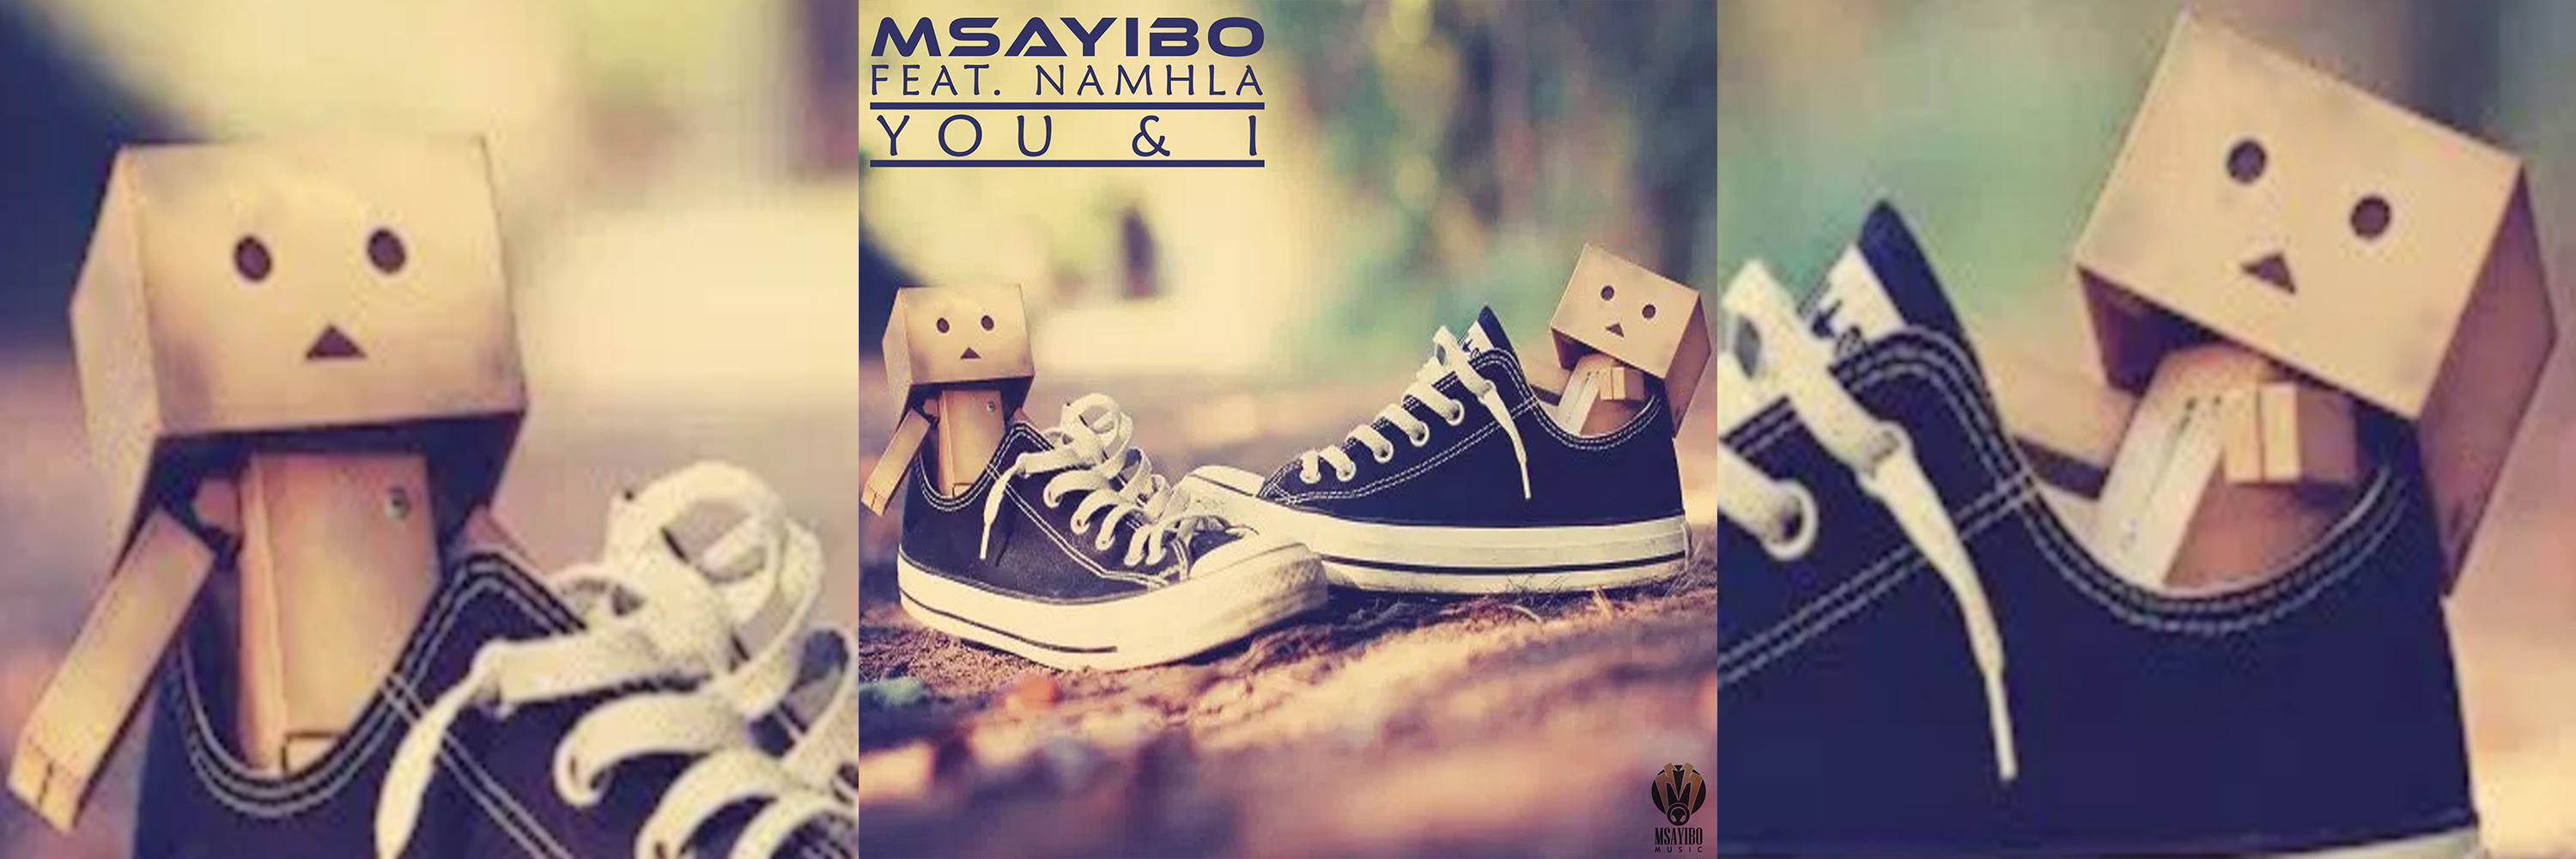 Msayibo - You & I [Slider]